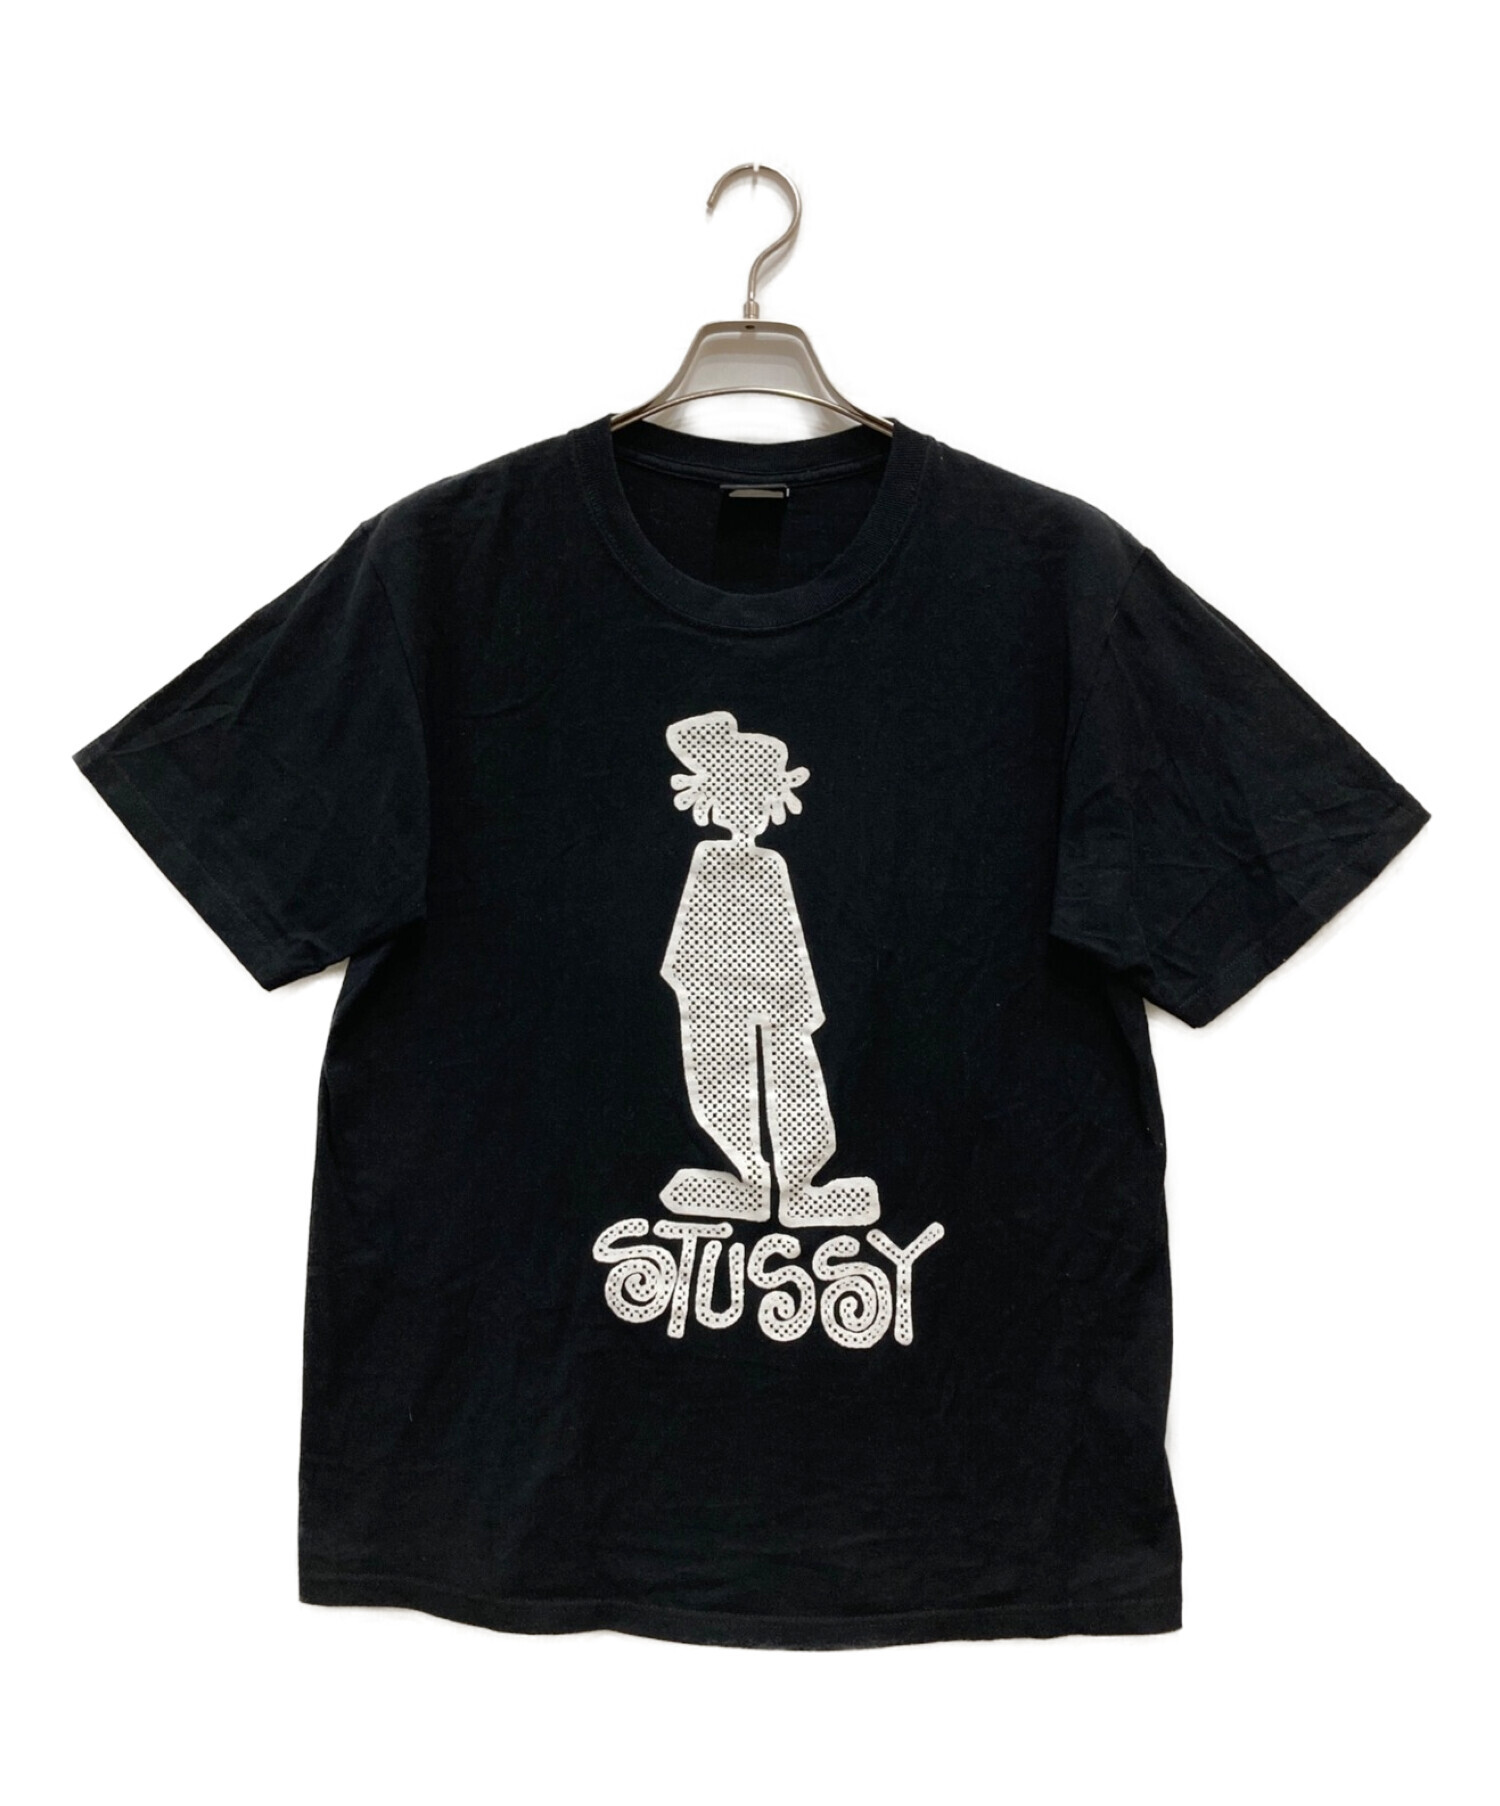 stussy (ステューシー) シャドーマンプリントTシャツ ブラック サイズ:M